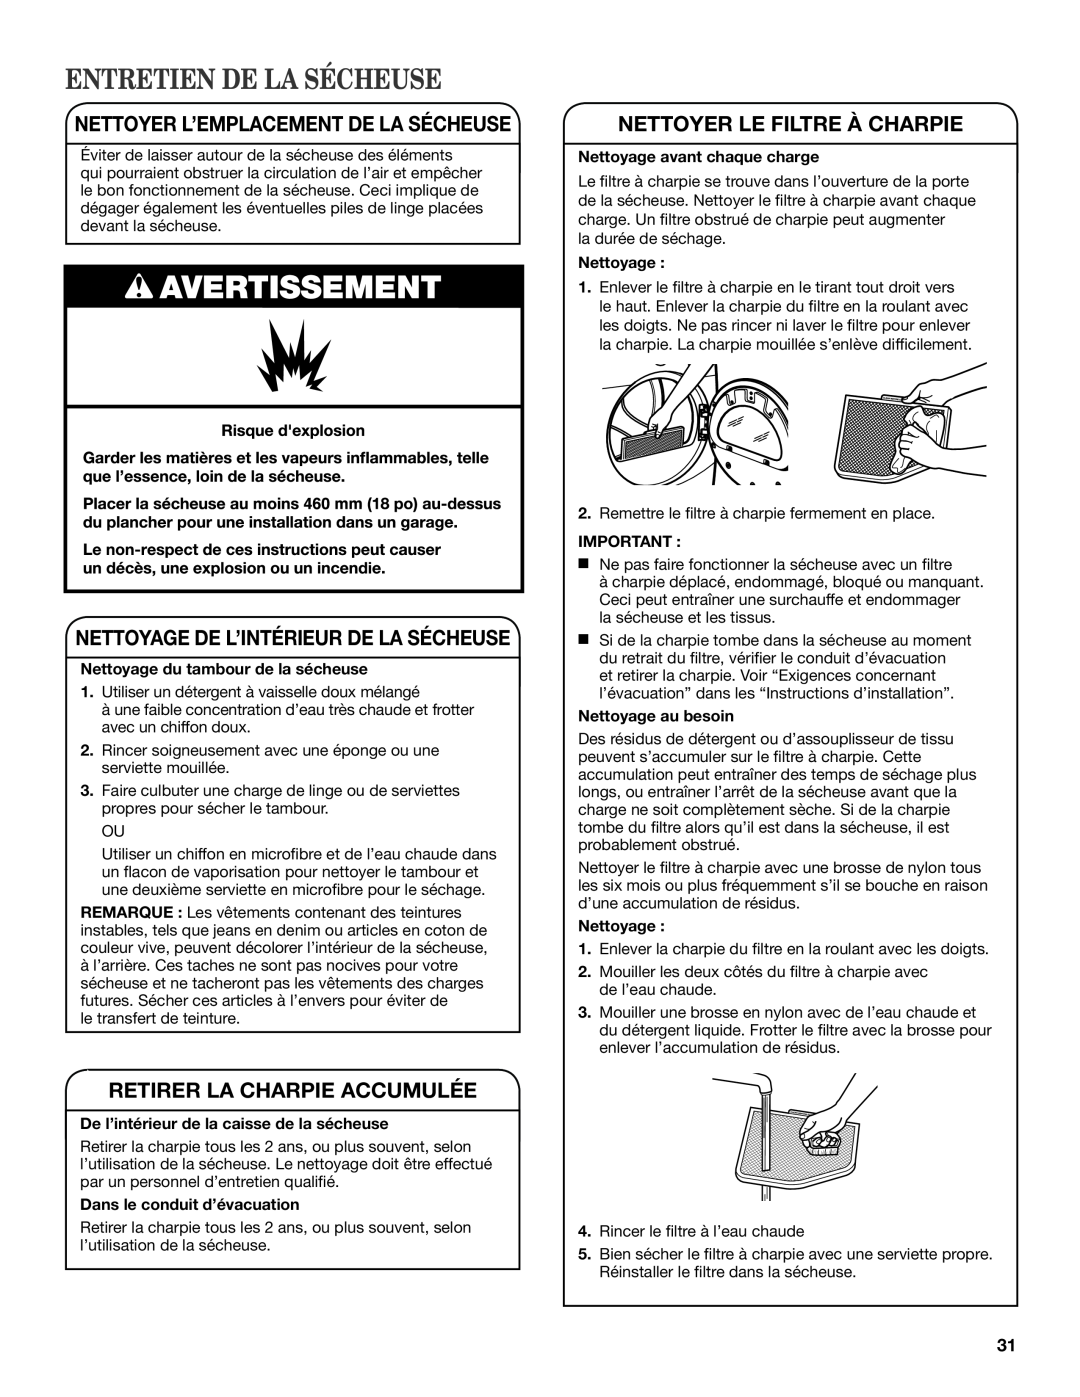 Maytag W10385091A - SP manual Entretien De La Sécheuse, Nettoyer L’Emplacement De La Sécheuse, Retirer La Charpie Accumulée 